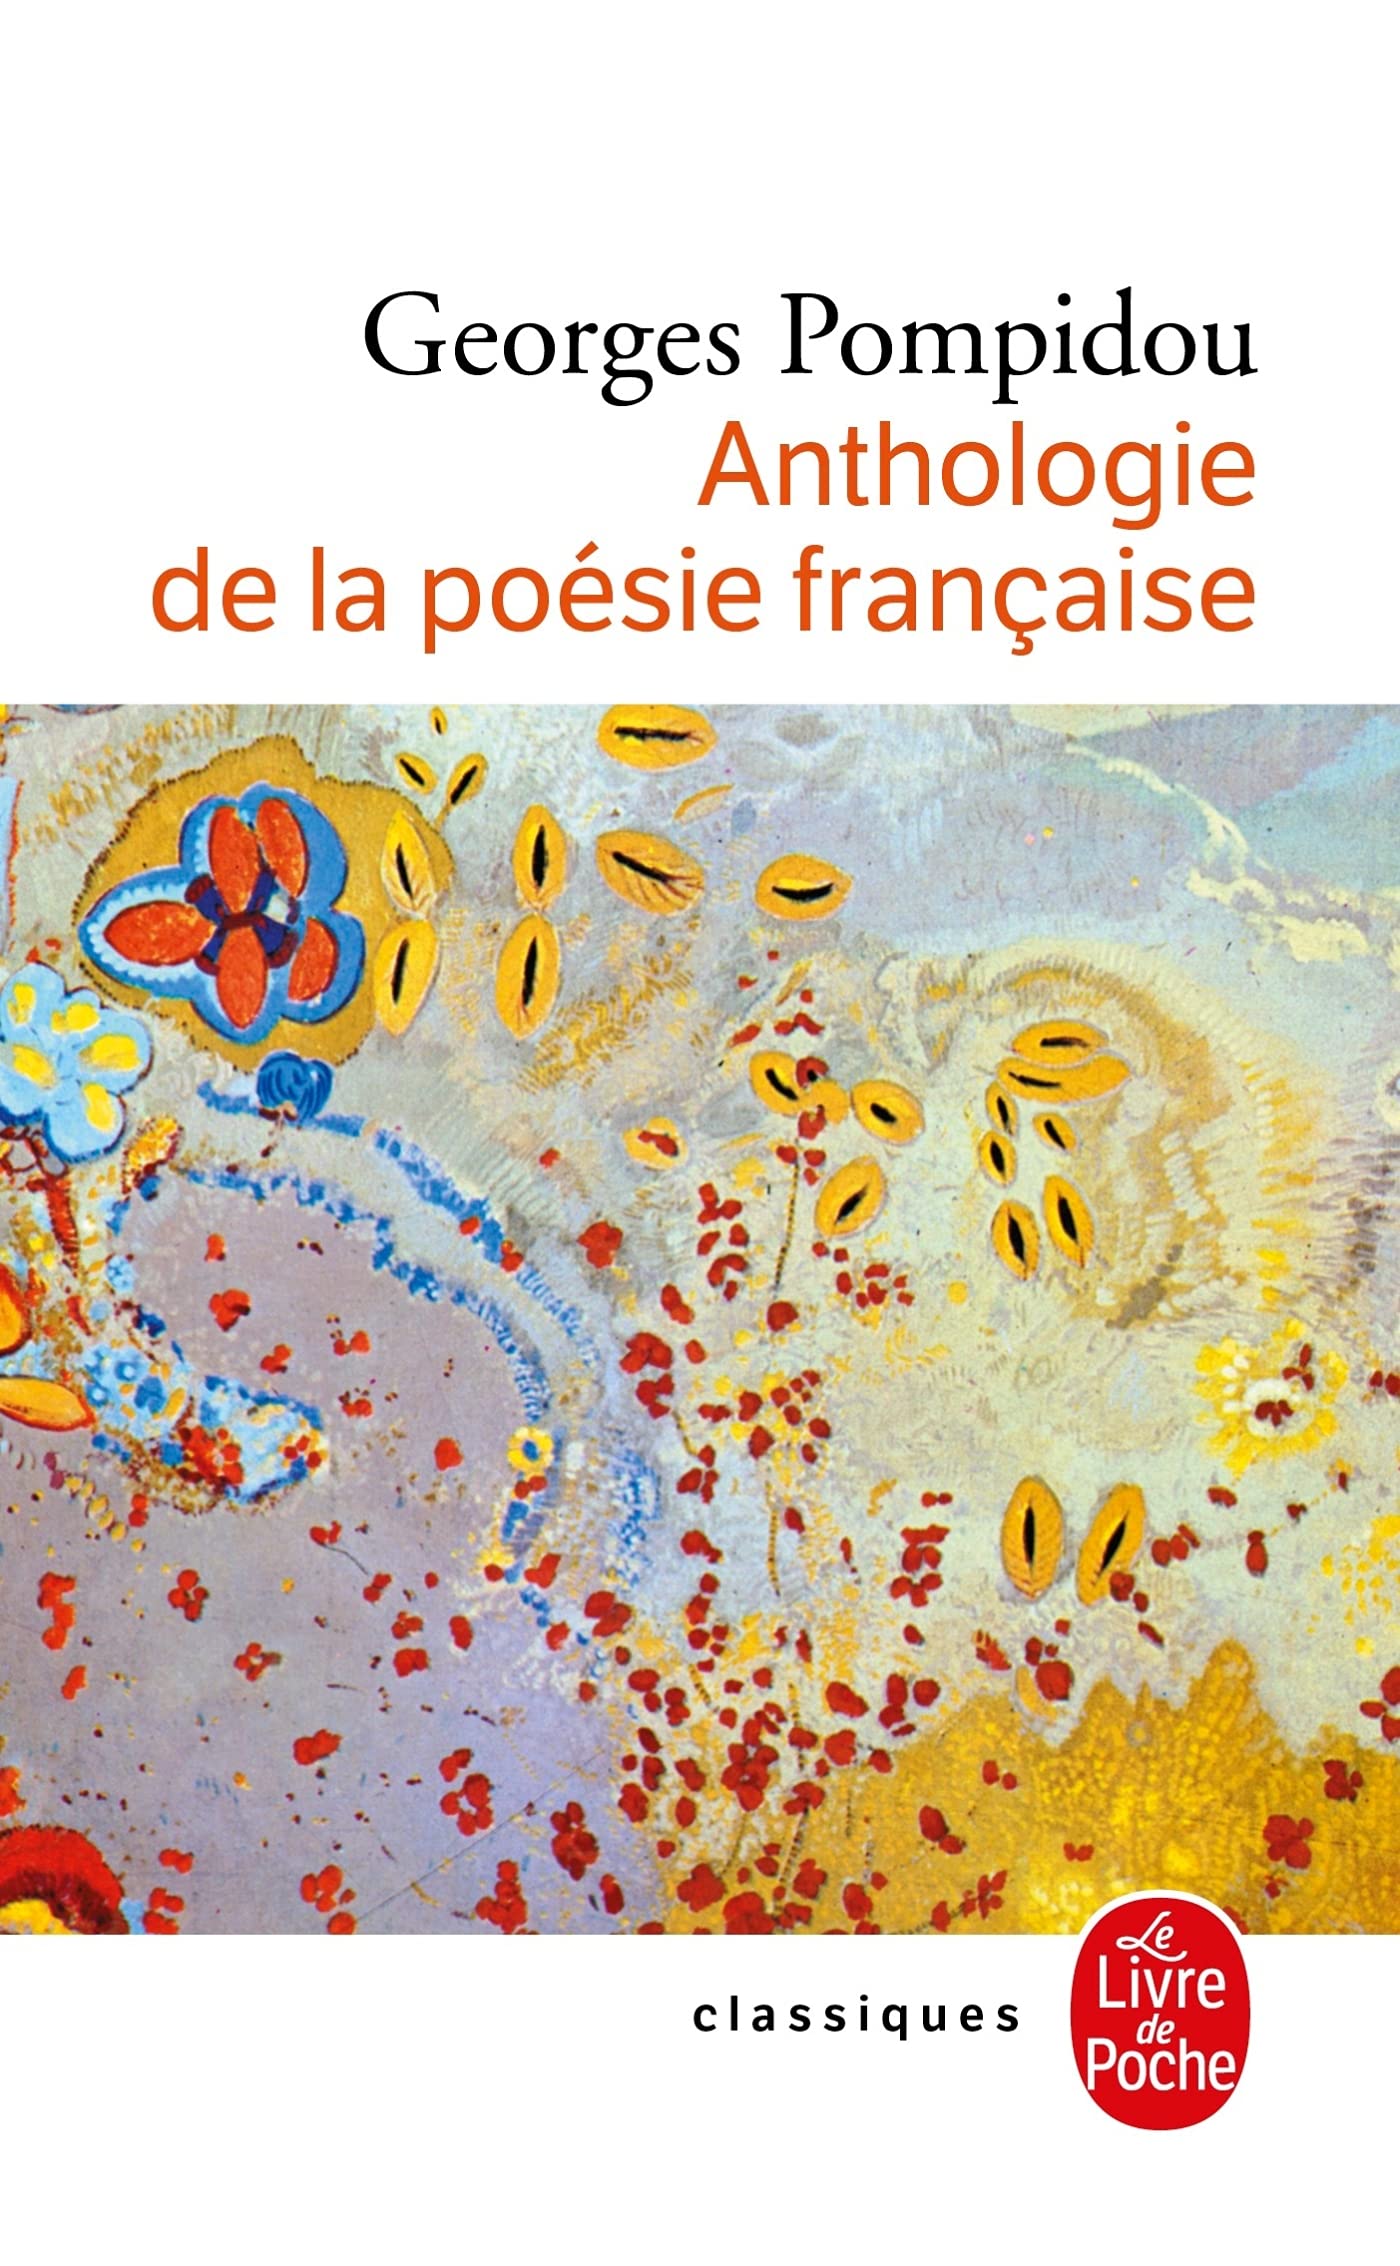 法语原版 乔治·蓬皮杜诗选 Anthologie de La Poesie Francaise 法语诗歌